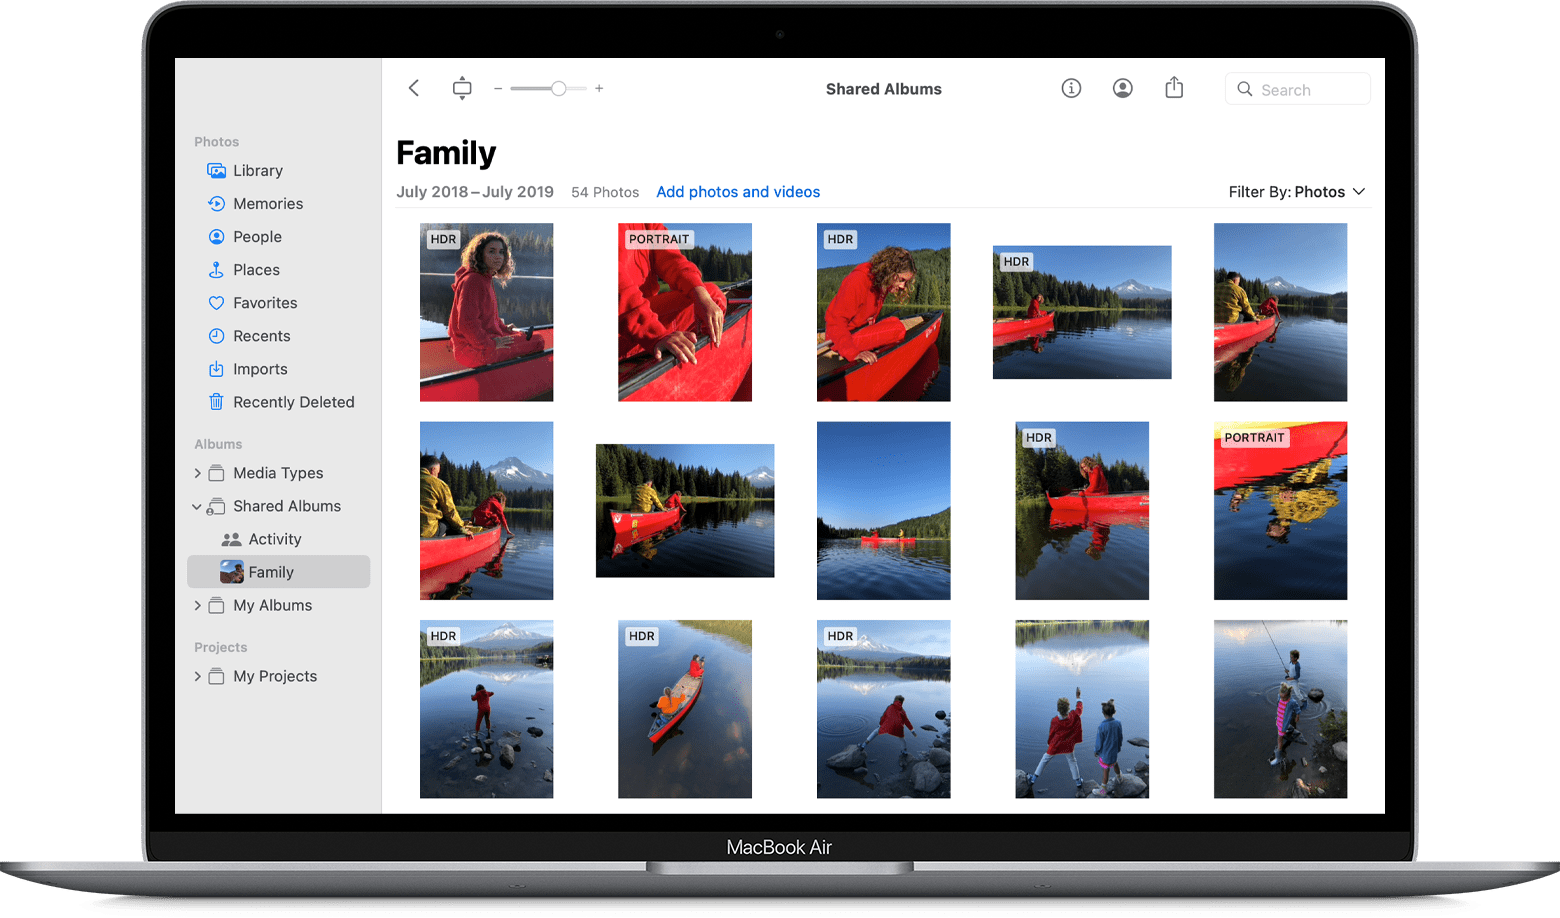 MacBook Air avec app Photos affichant un album de famille partagé